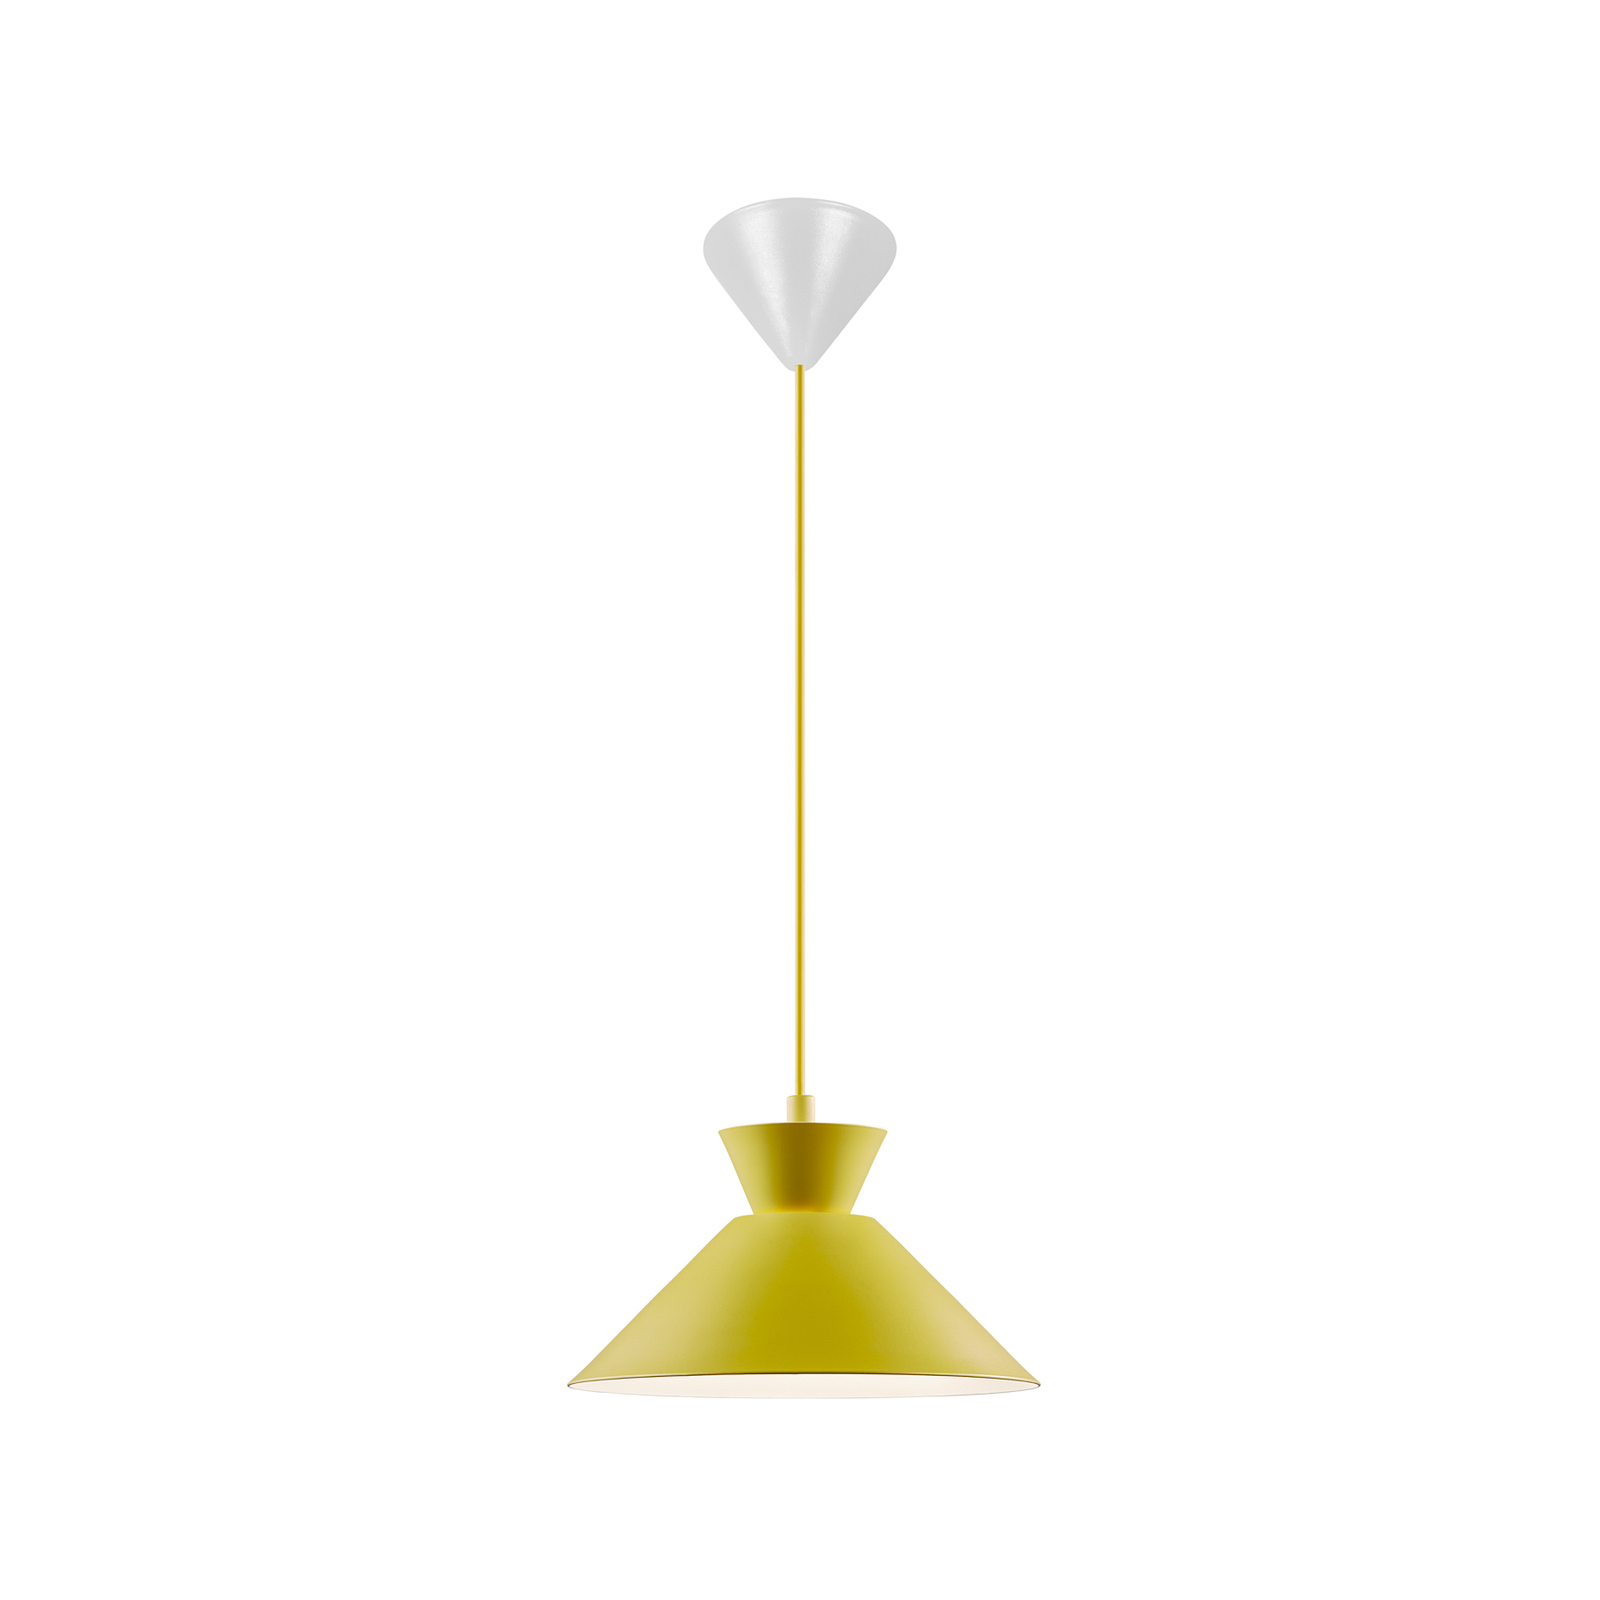 Lampada a sospensione Dial con paralume in metallo, giallo, Ø 25 cm